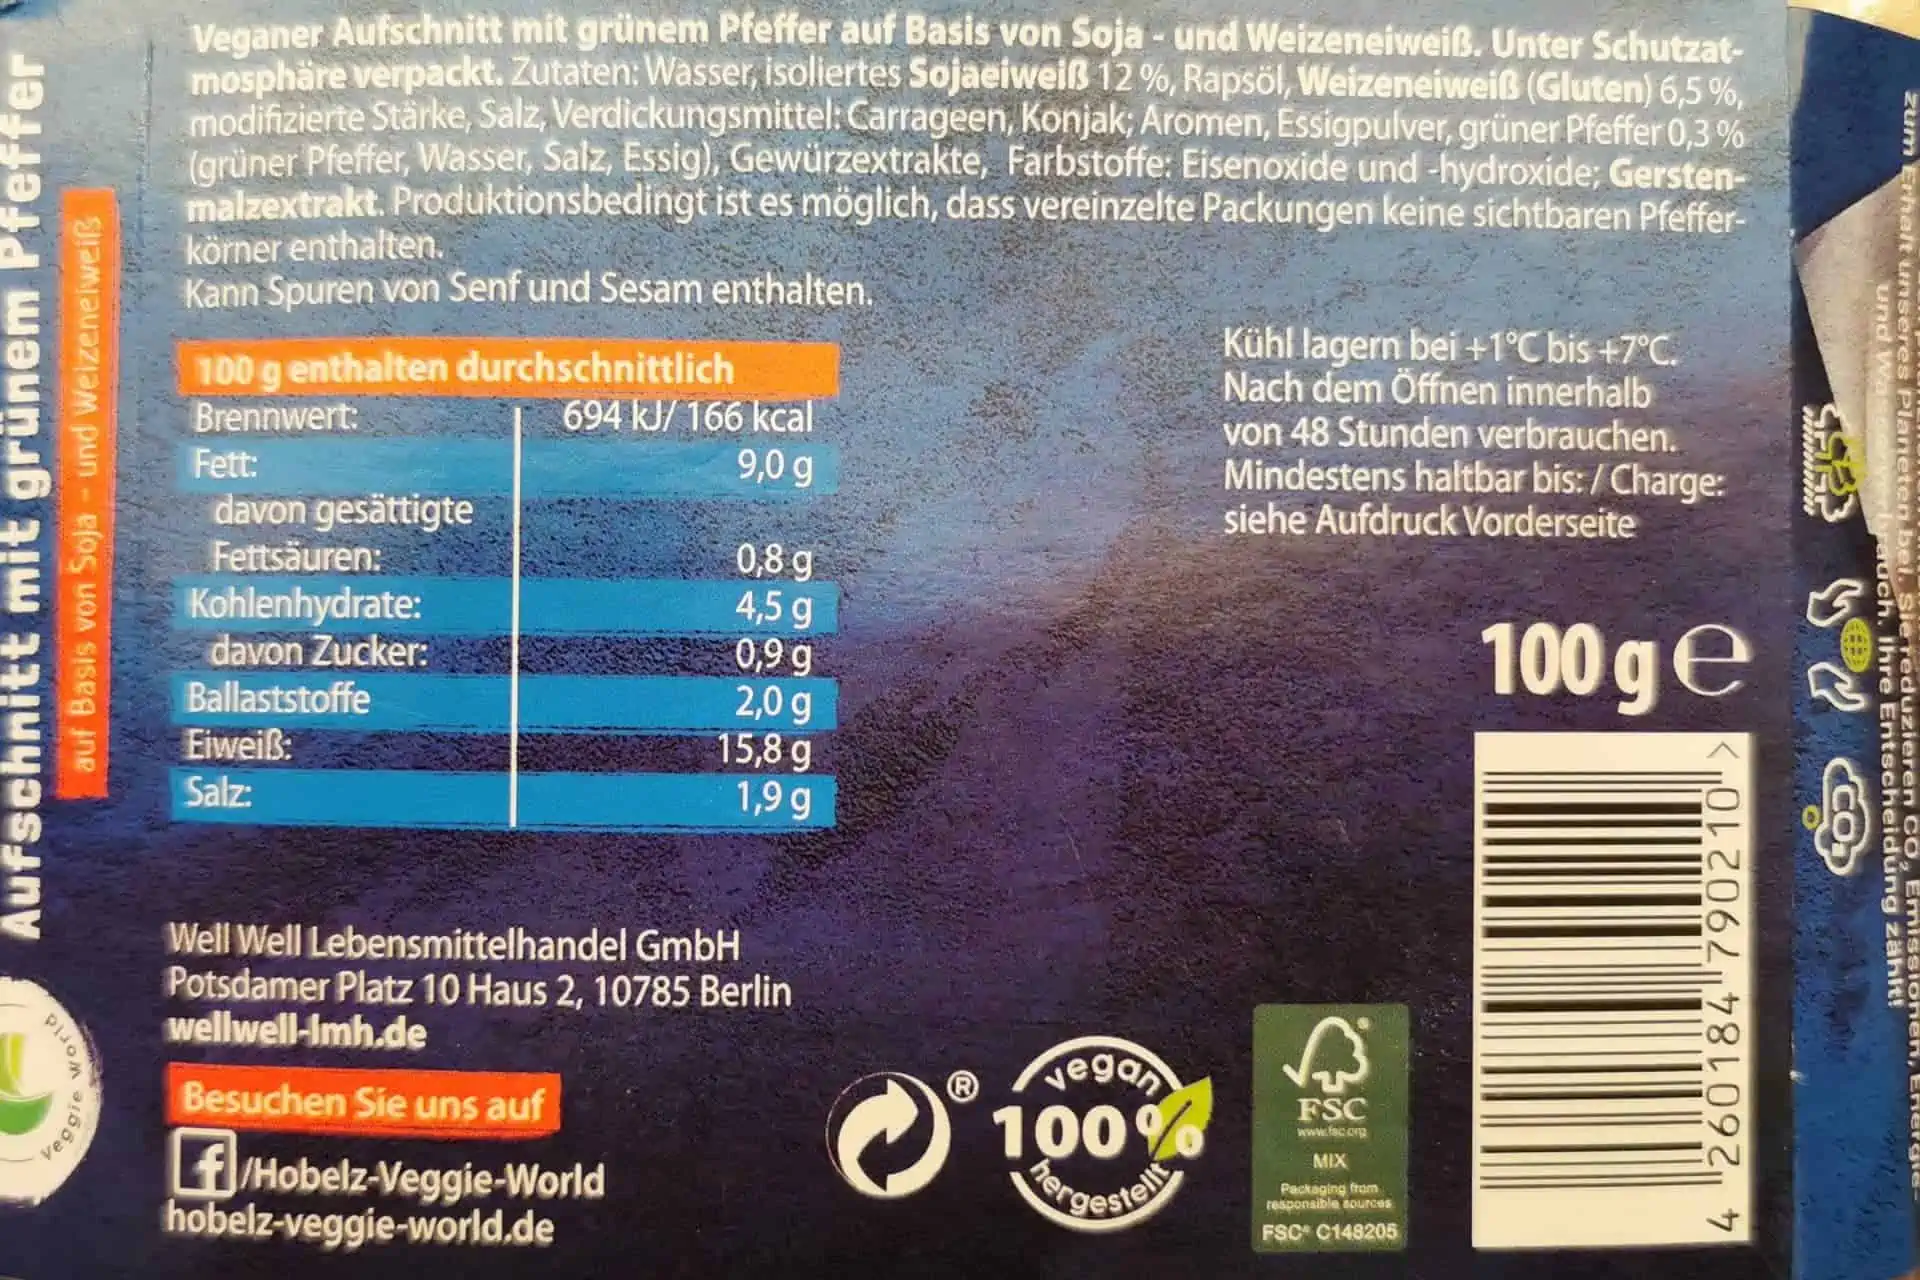 Hobelz - Veganer Aufschnitt grüner Pfeffer Inhaltsstoffe und Nährwerte